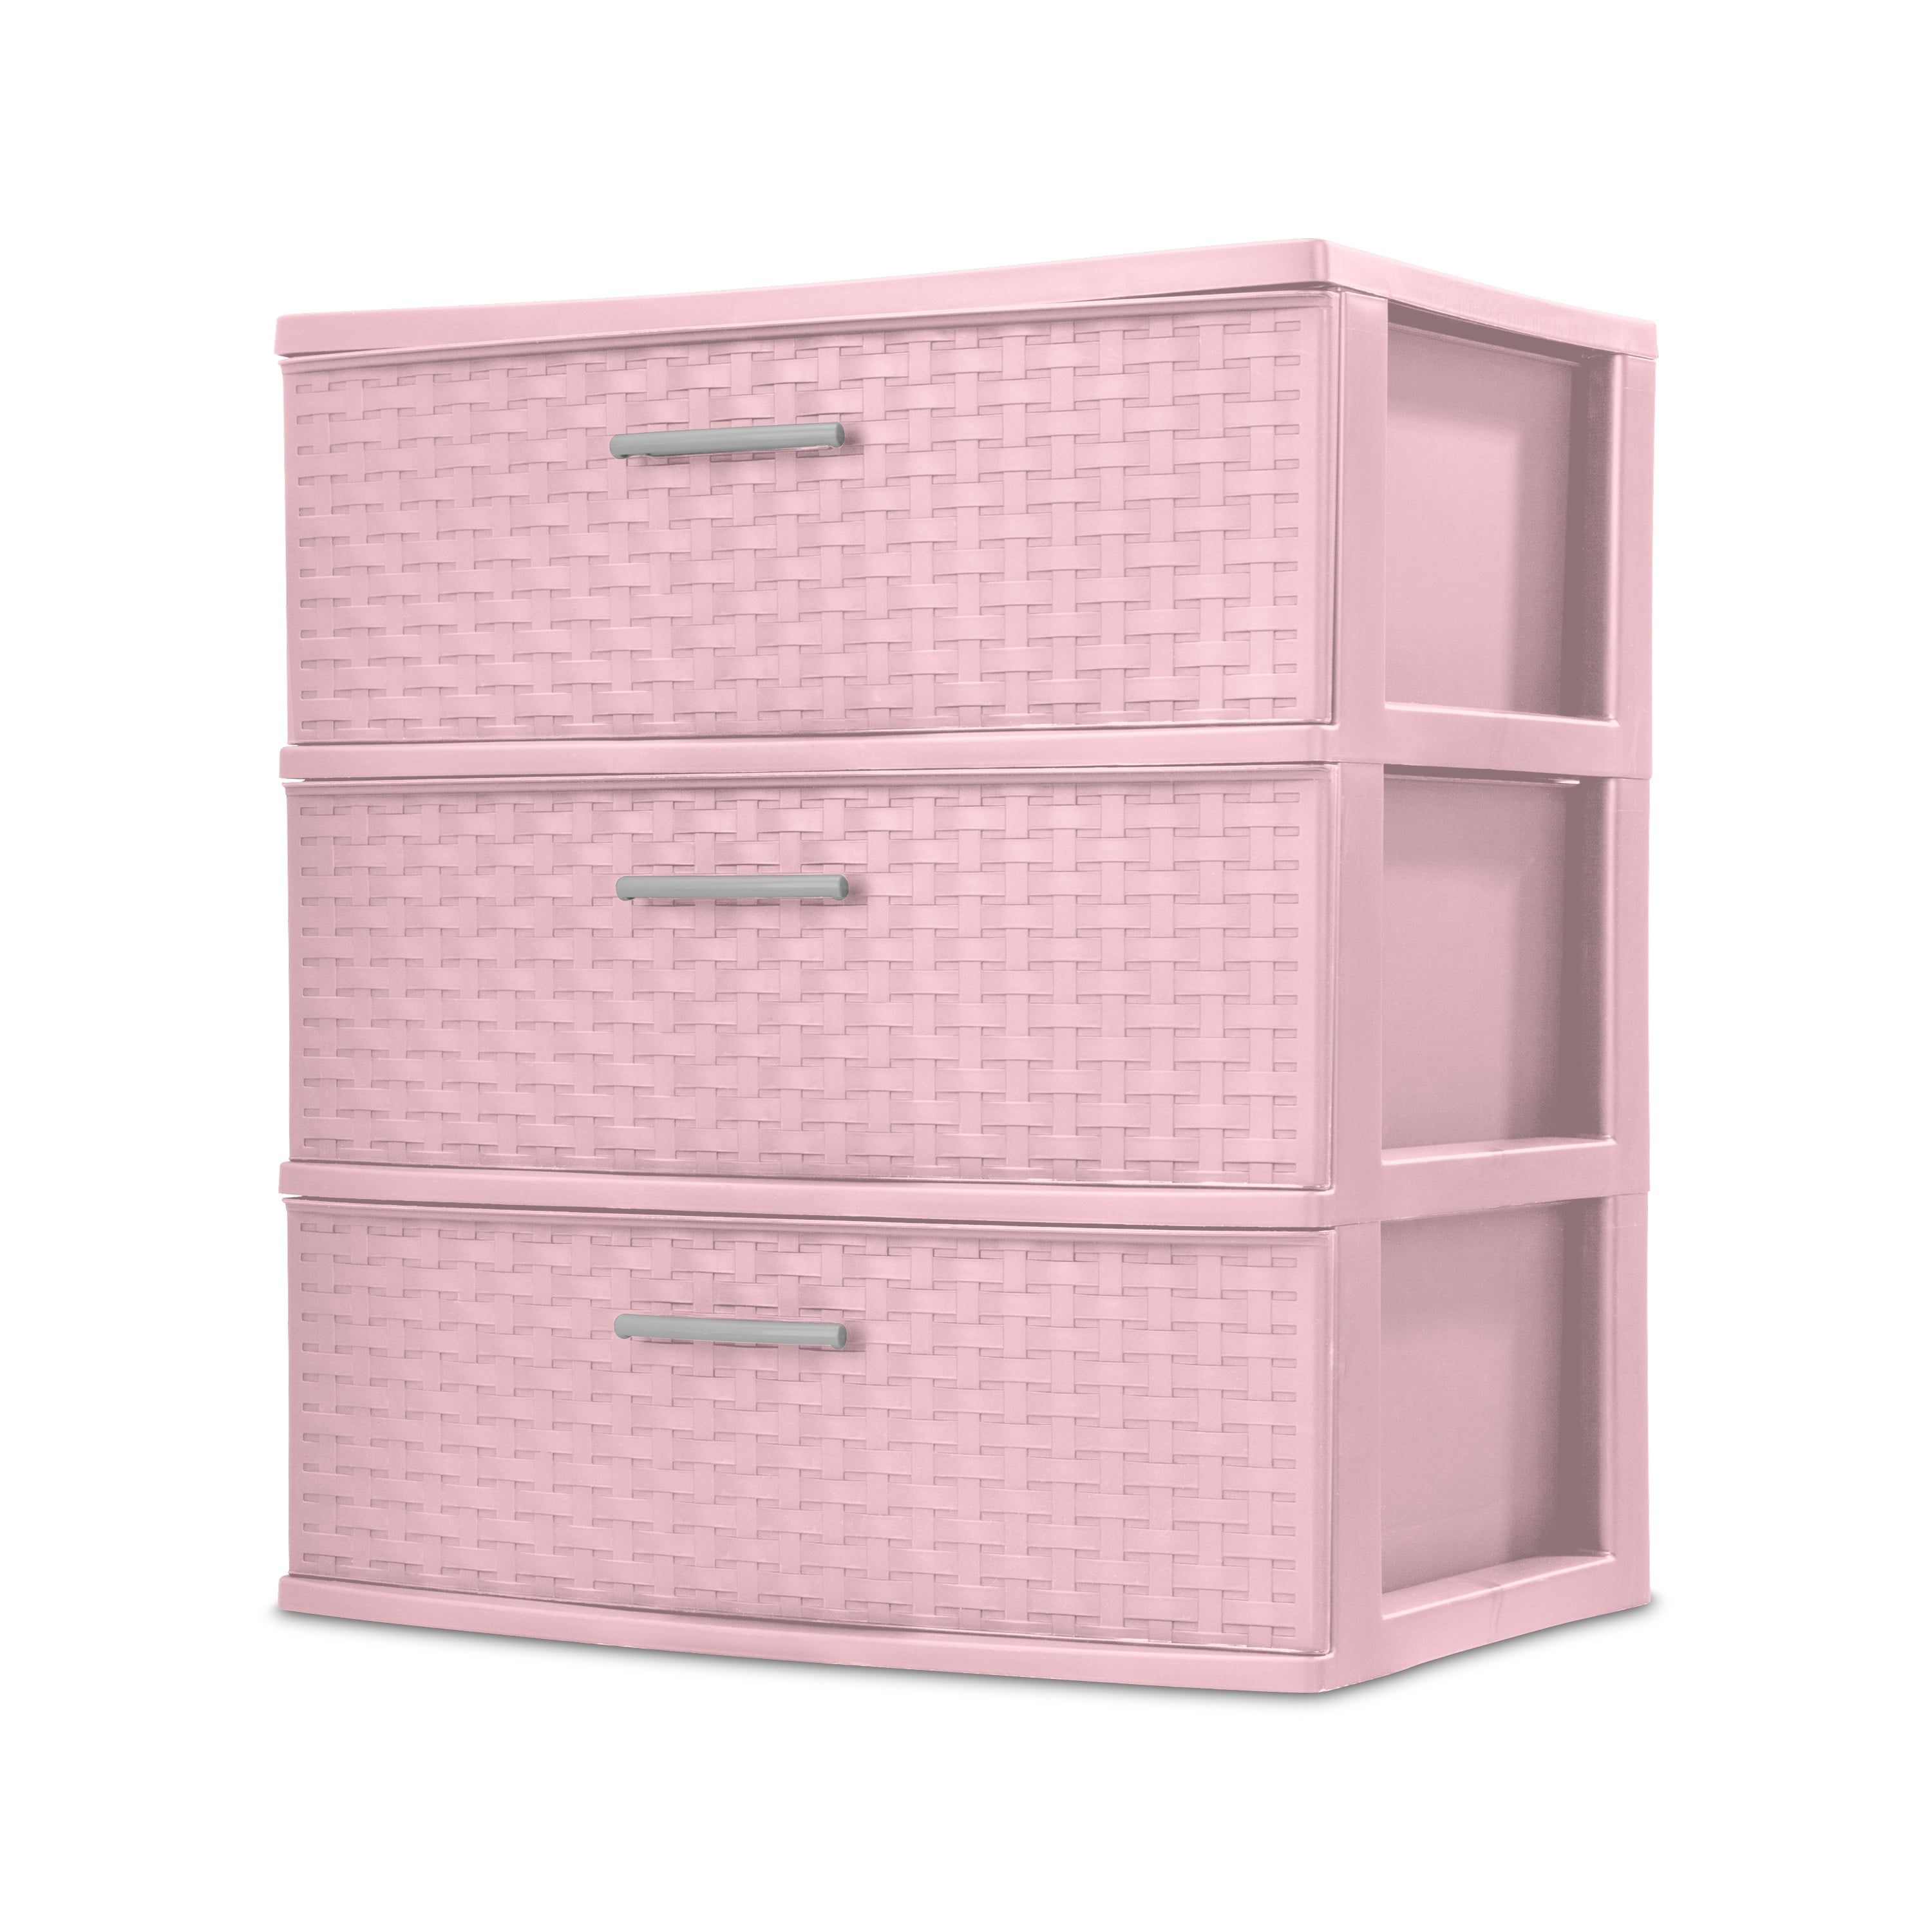 Large 3 Drawers Pink Plastic Storage Drawers 